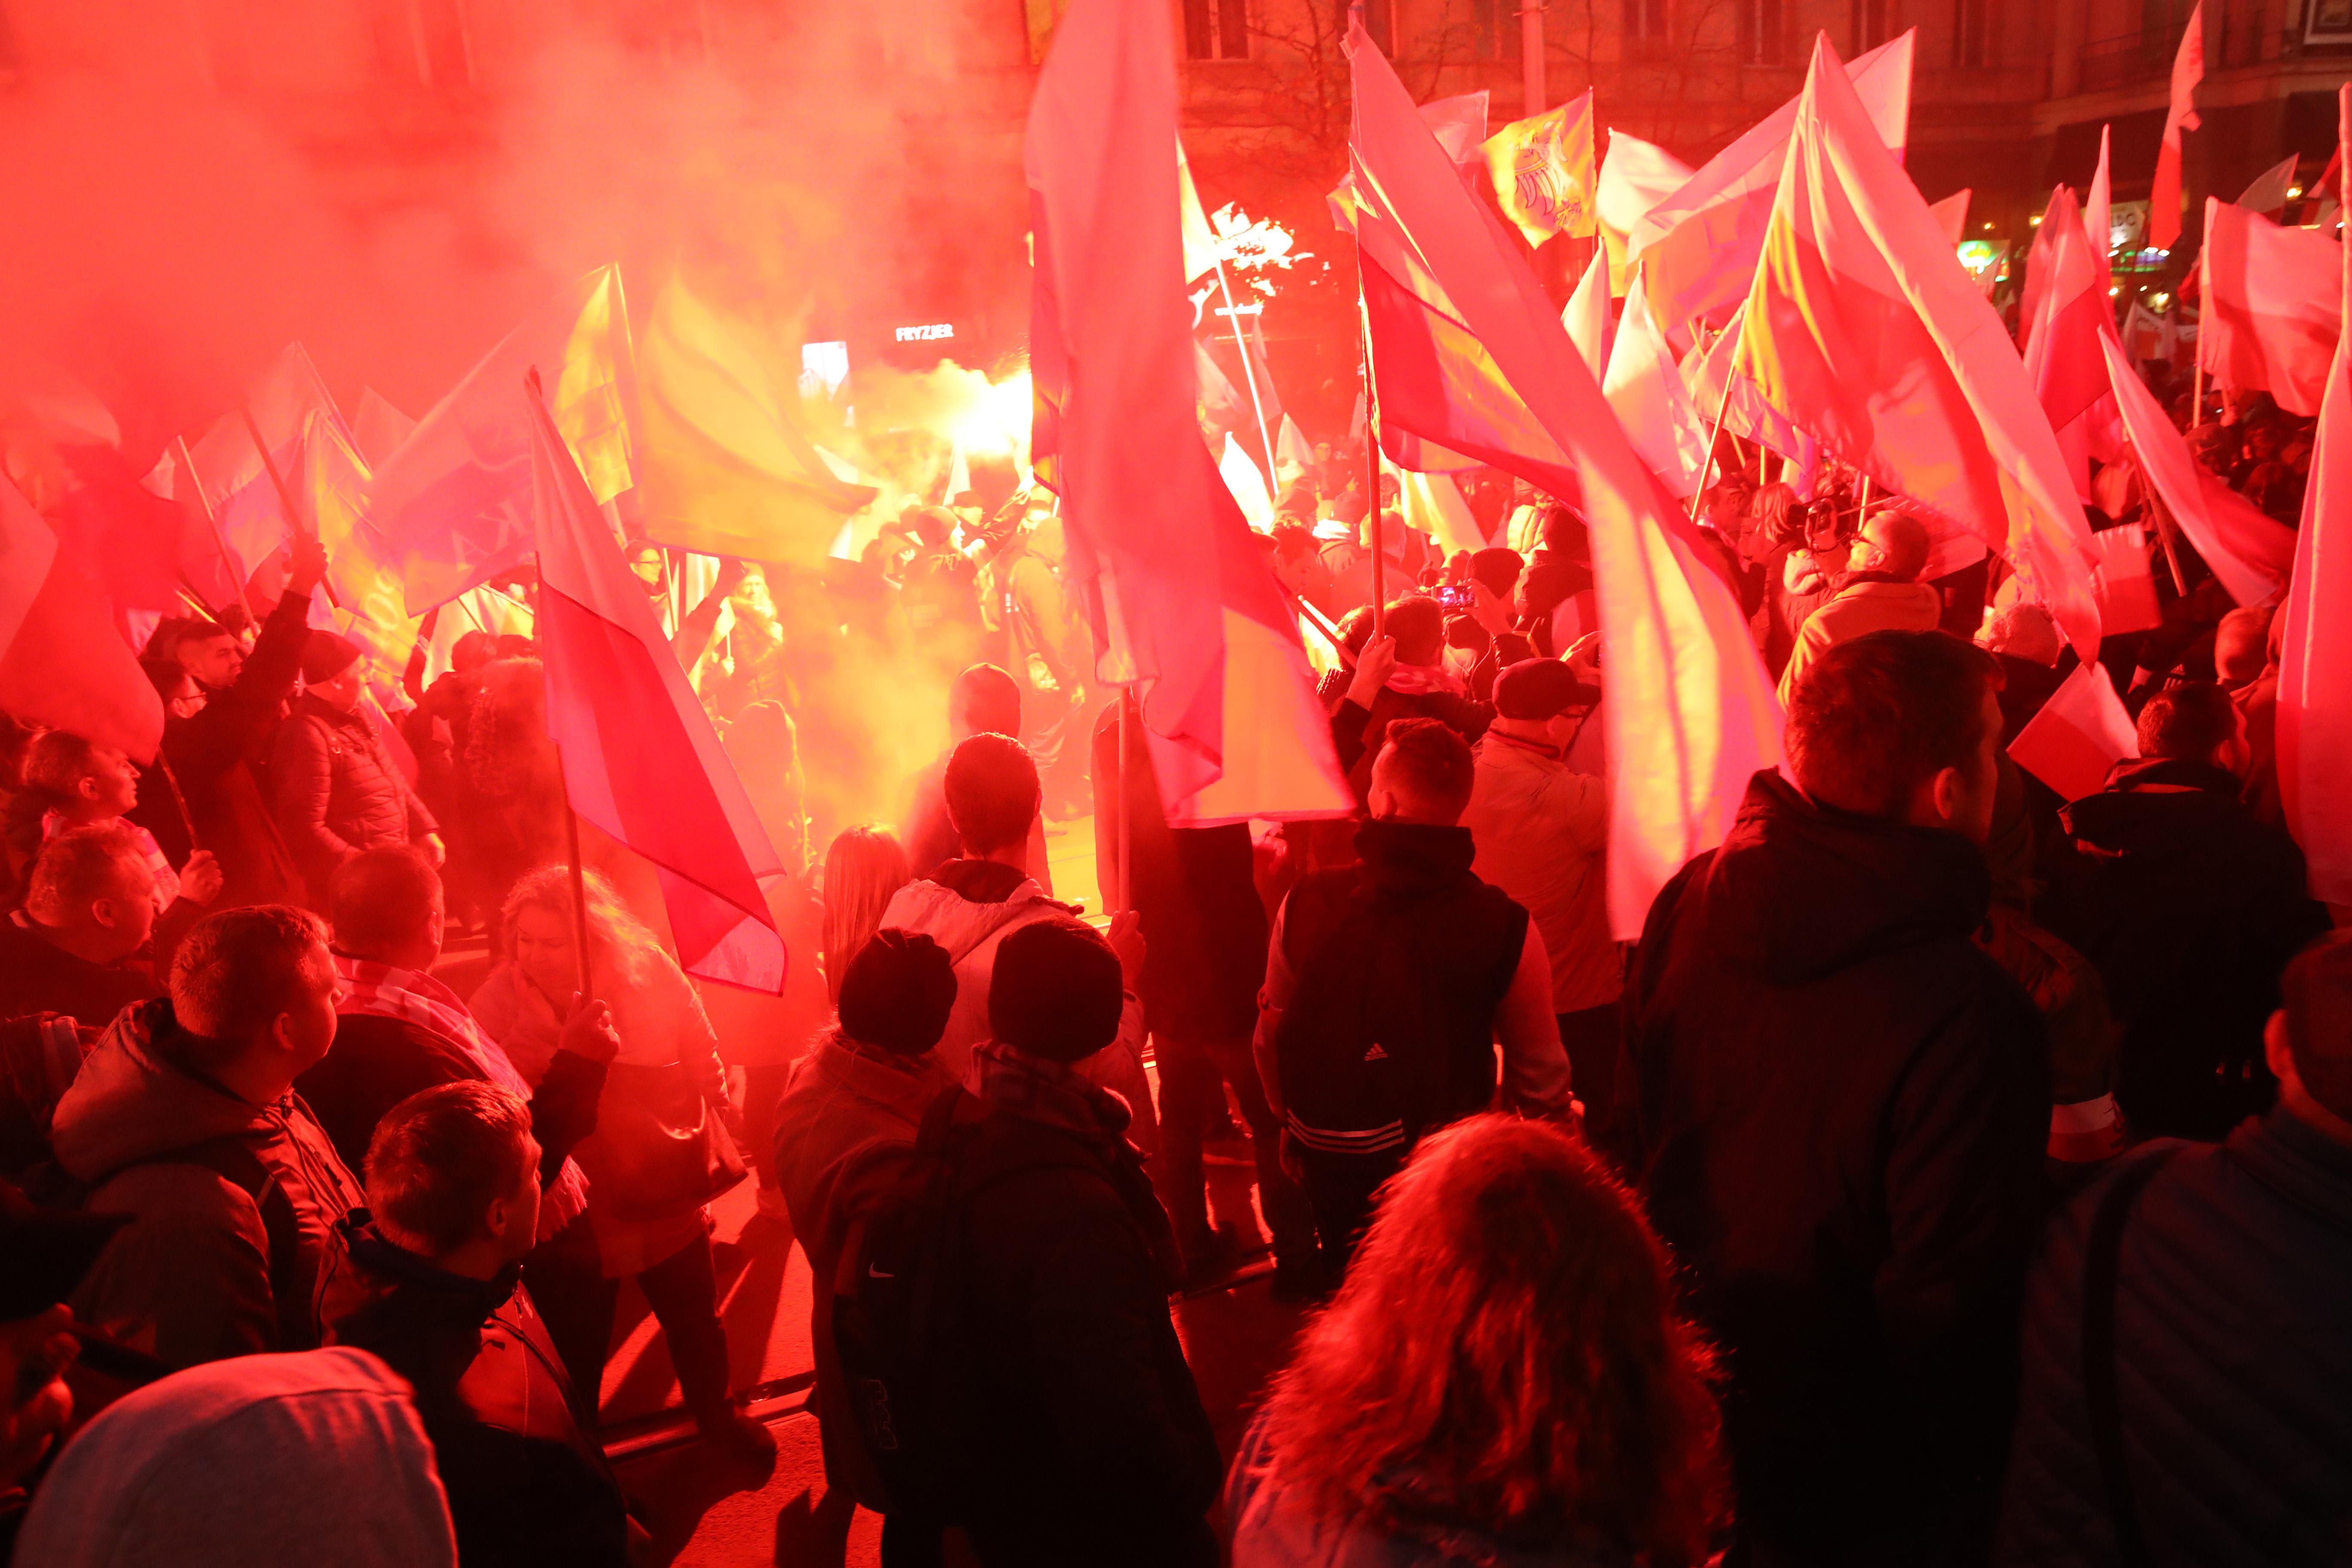 Польша масштабно отмечает 100-летие восстановления независимости: яркие фото